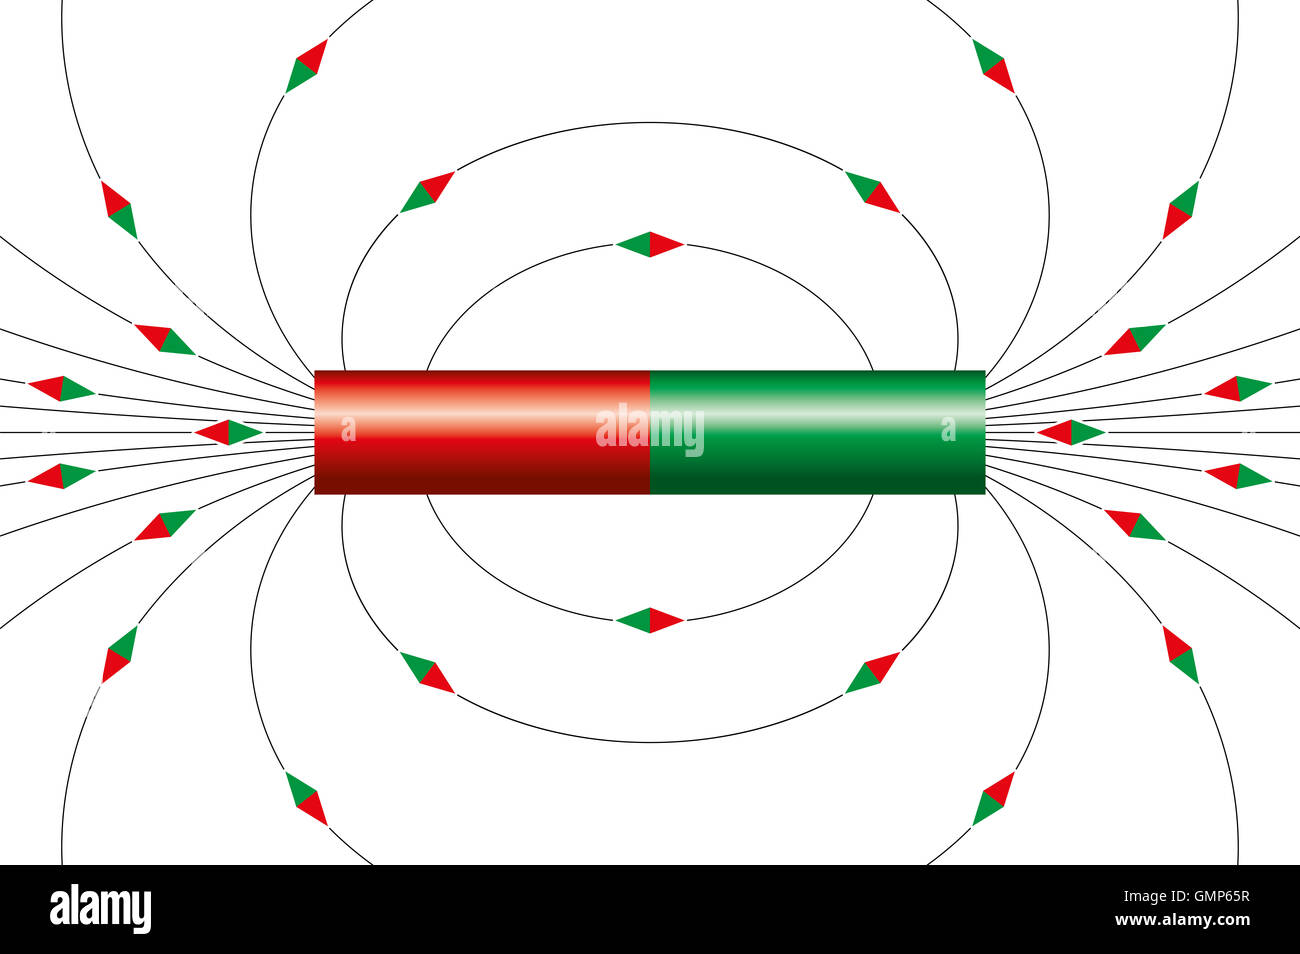 Magnetische Feldlinien des Stabmagneten. Die kleinen Magneten Nadel Symbole zeigen die Richtung des Feldes um den Magneten. Stockfoto